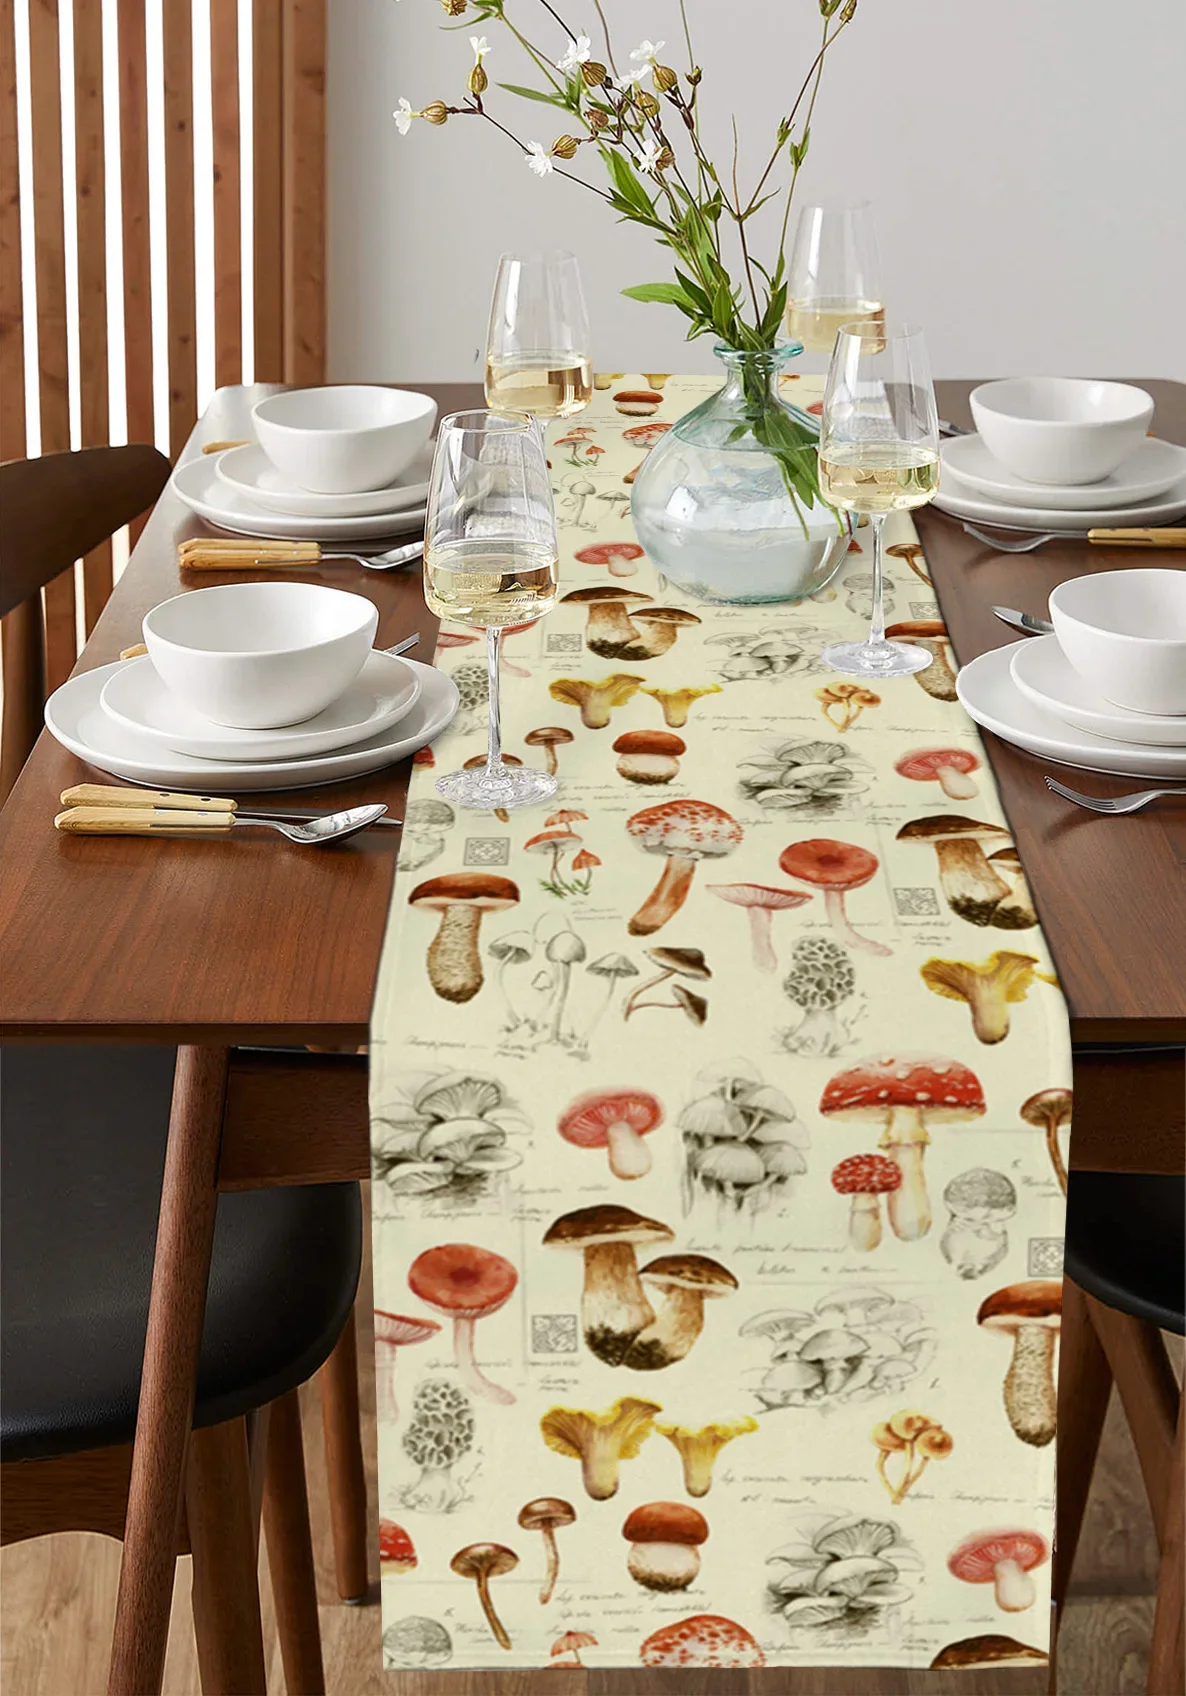 Gomba növény Őszi asztalfutó dekoráció Lakberendezés Vacsora Asztal dekoráció Asztaldekoráció - 3